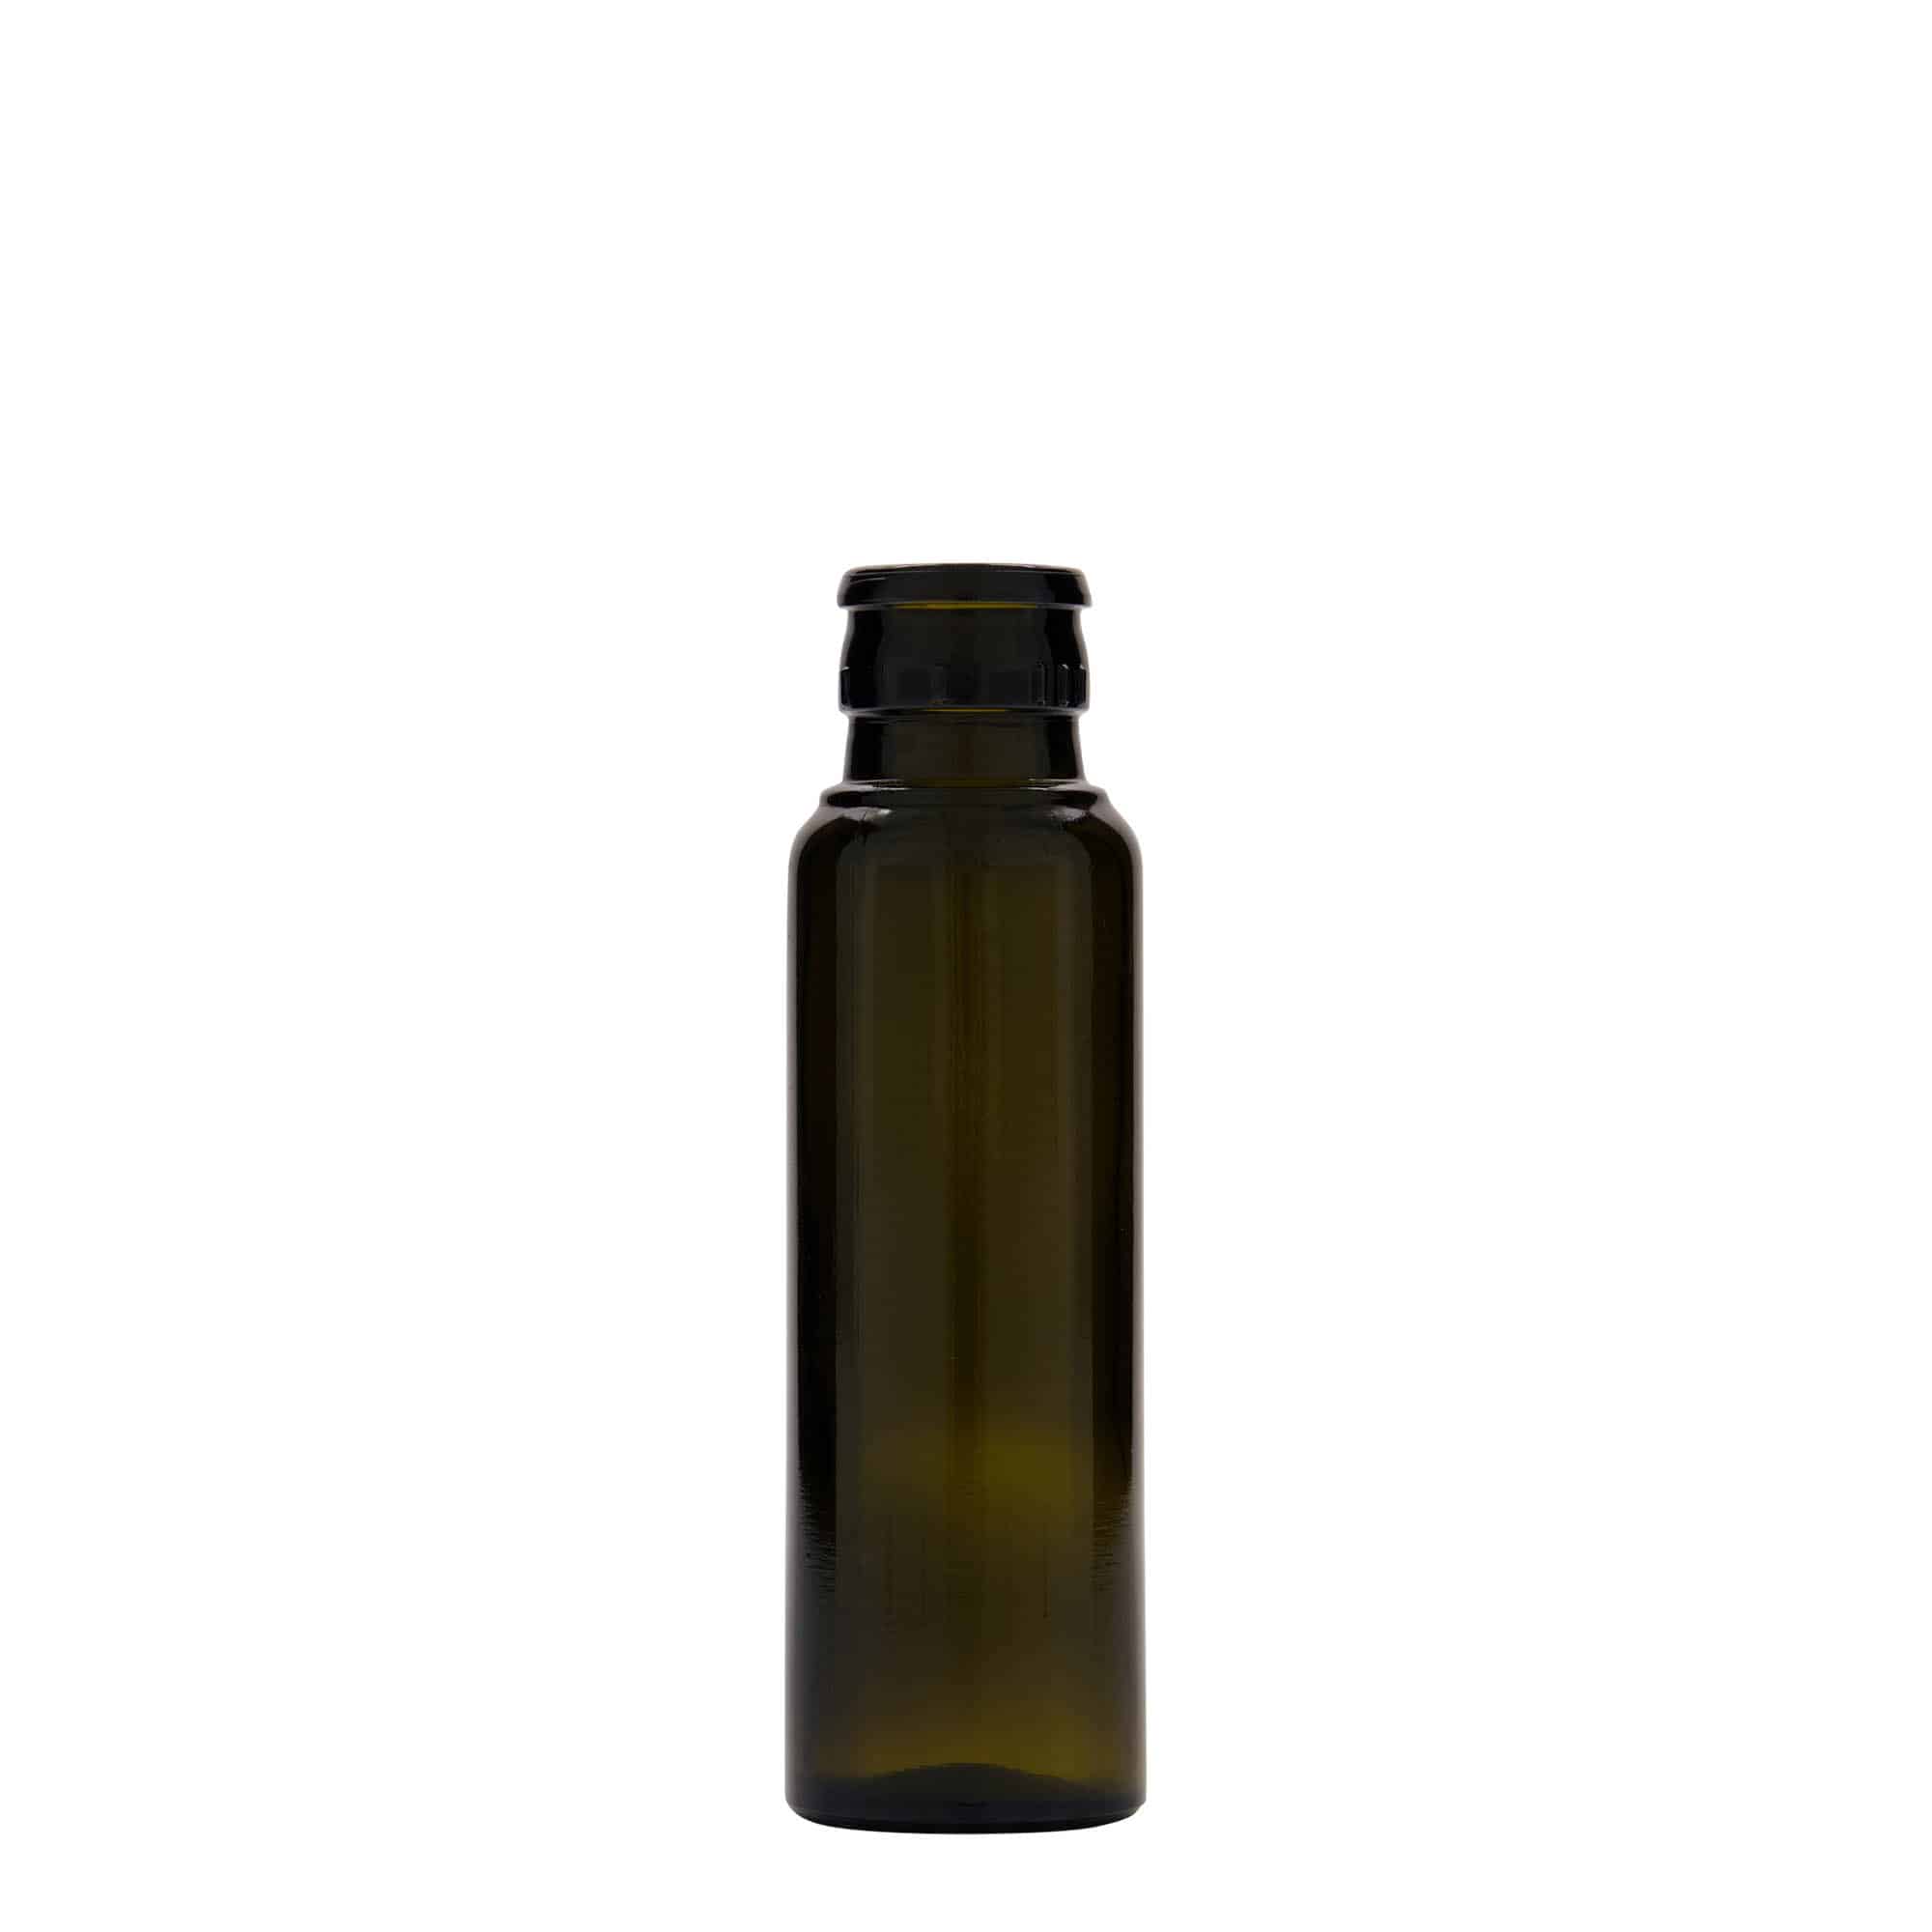 Azijn-/oliefles 'Willy New', 100 ml, glas, antiekgroen, monding: DOP